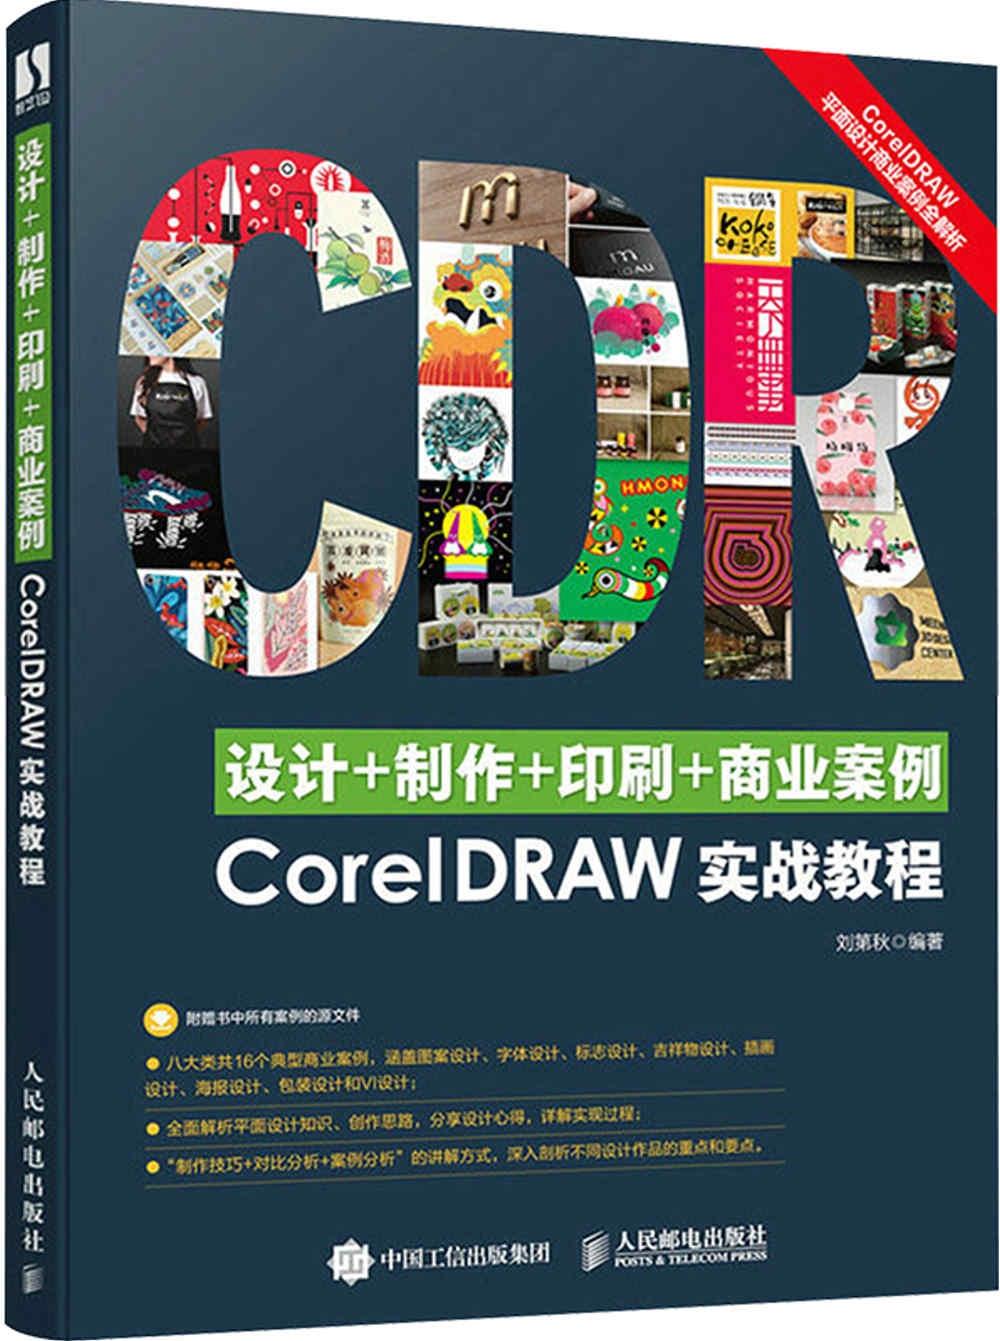 設計+製作+印刷+商業案例CorelDRAW實戰教程